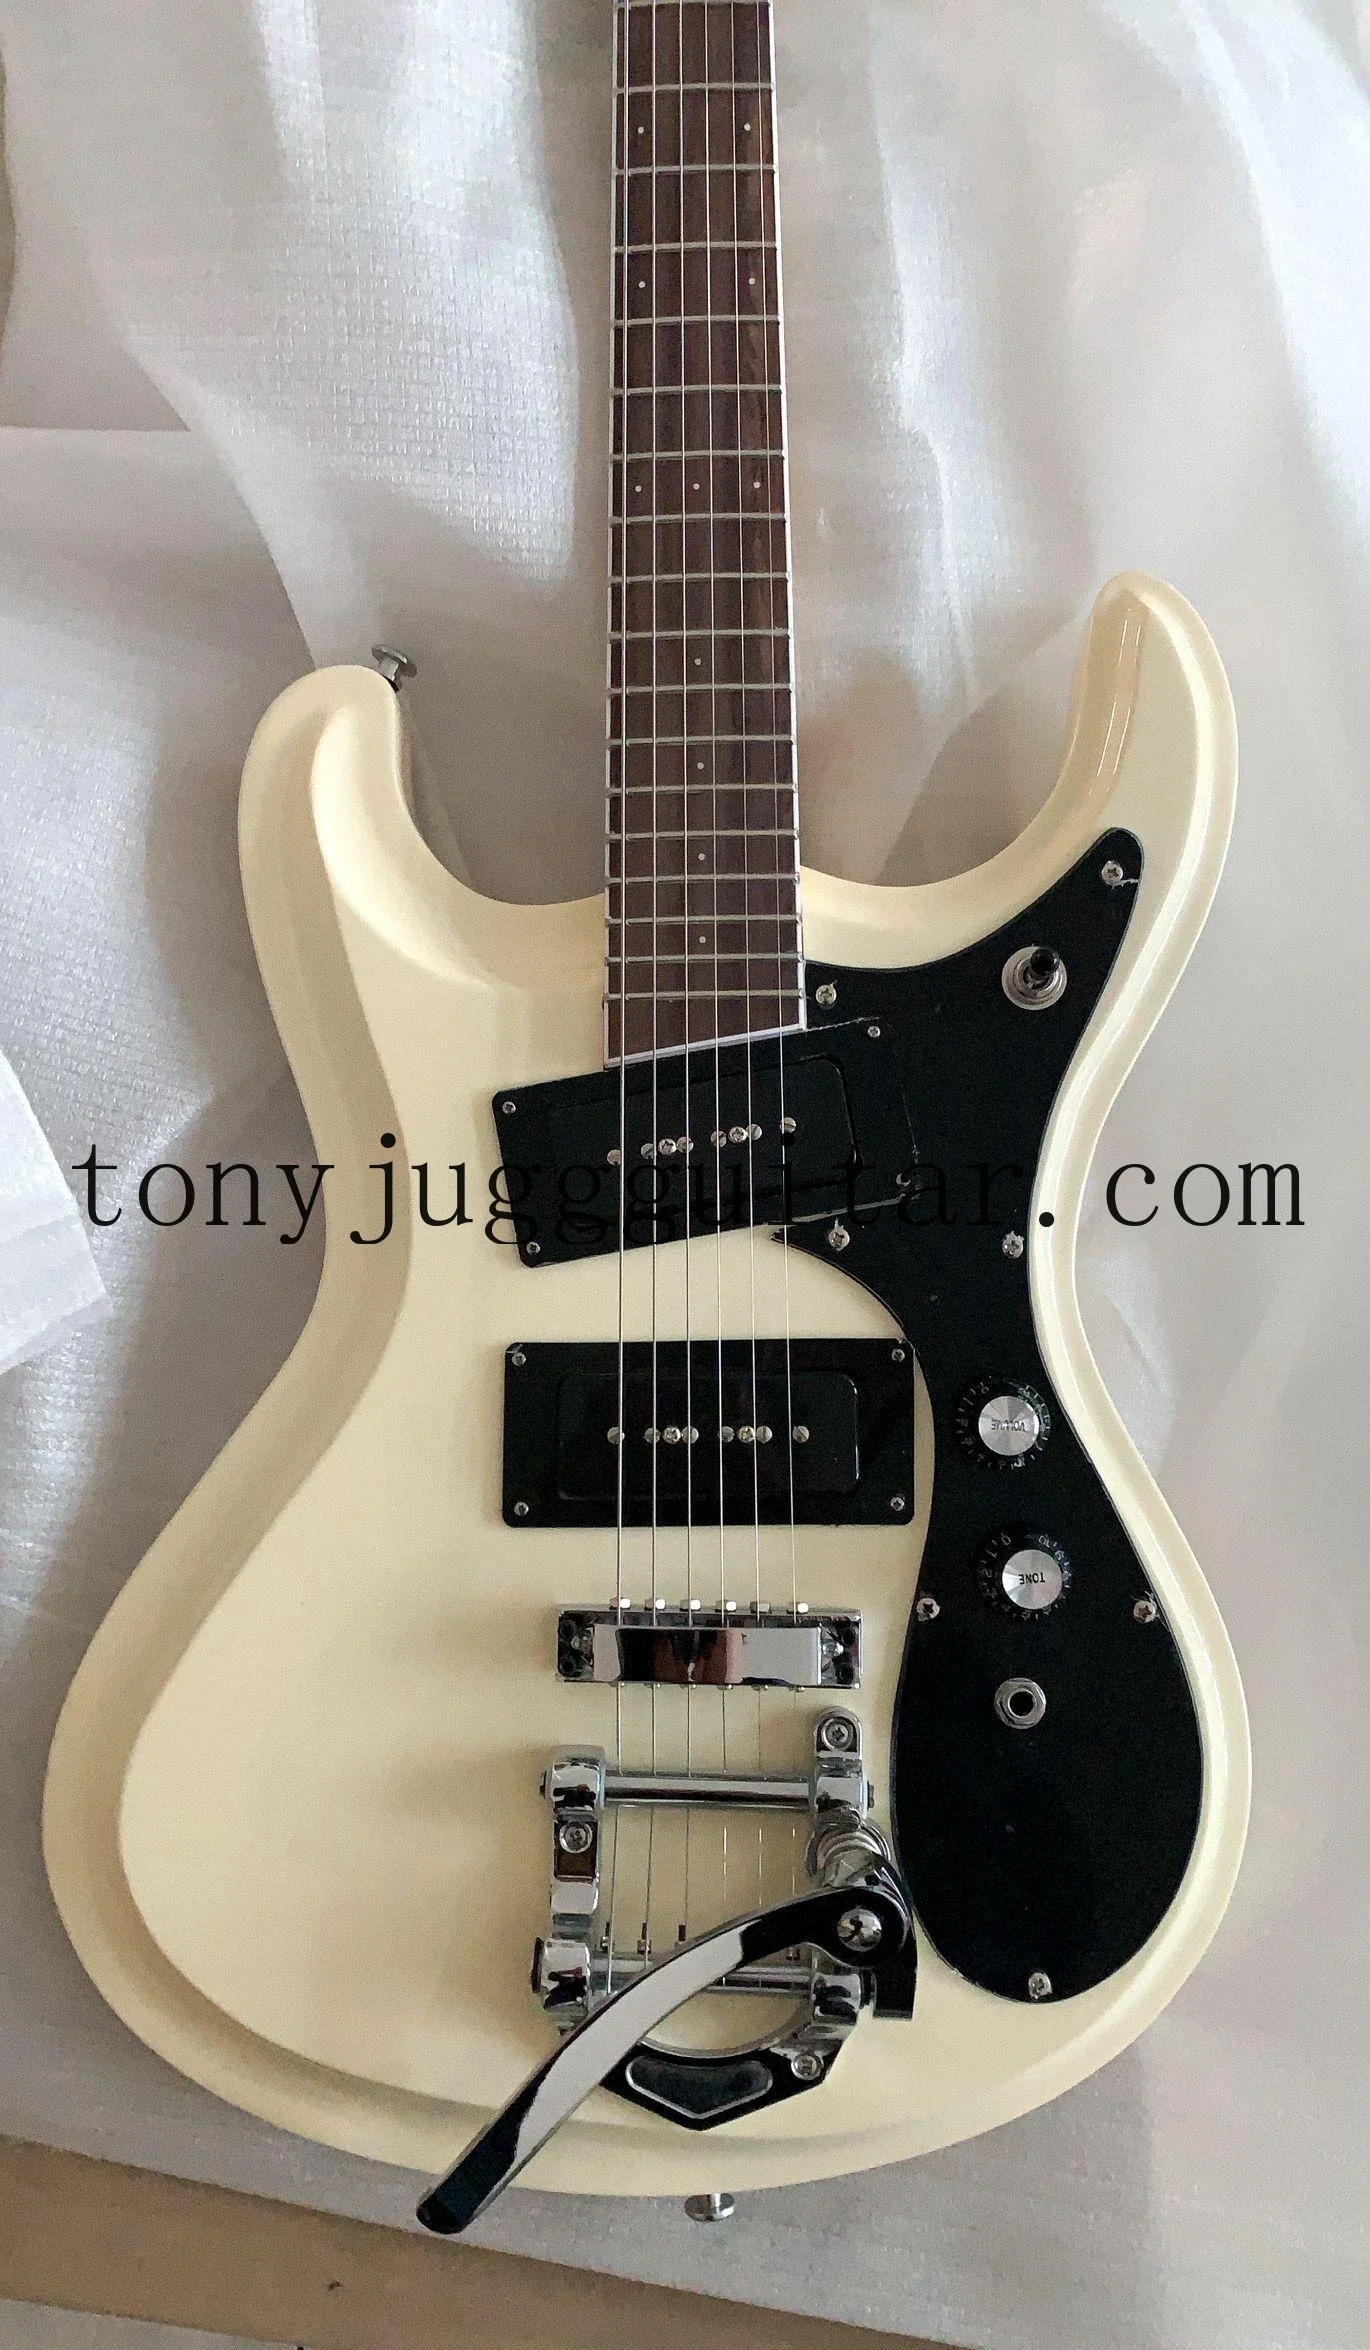 

Электрическая гитара Mosrite Jones Ramone Vibramute Venture 1966, белая кремовая гитара Bigs Tremolo Bridge, черный пикап P90, инкрустация в маленькую точку